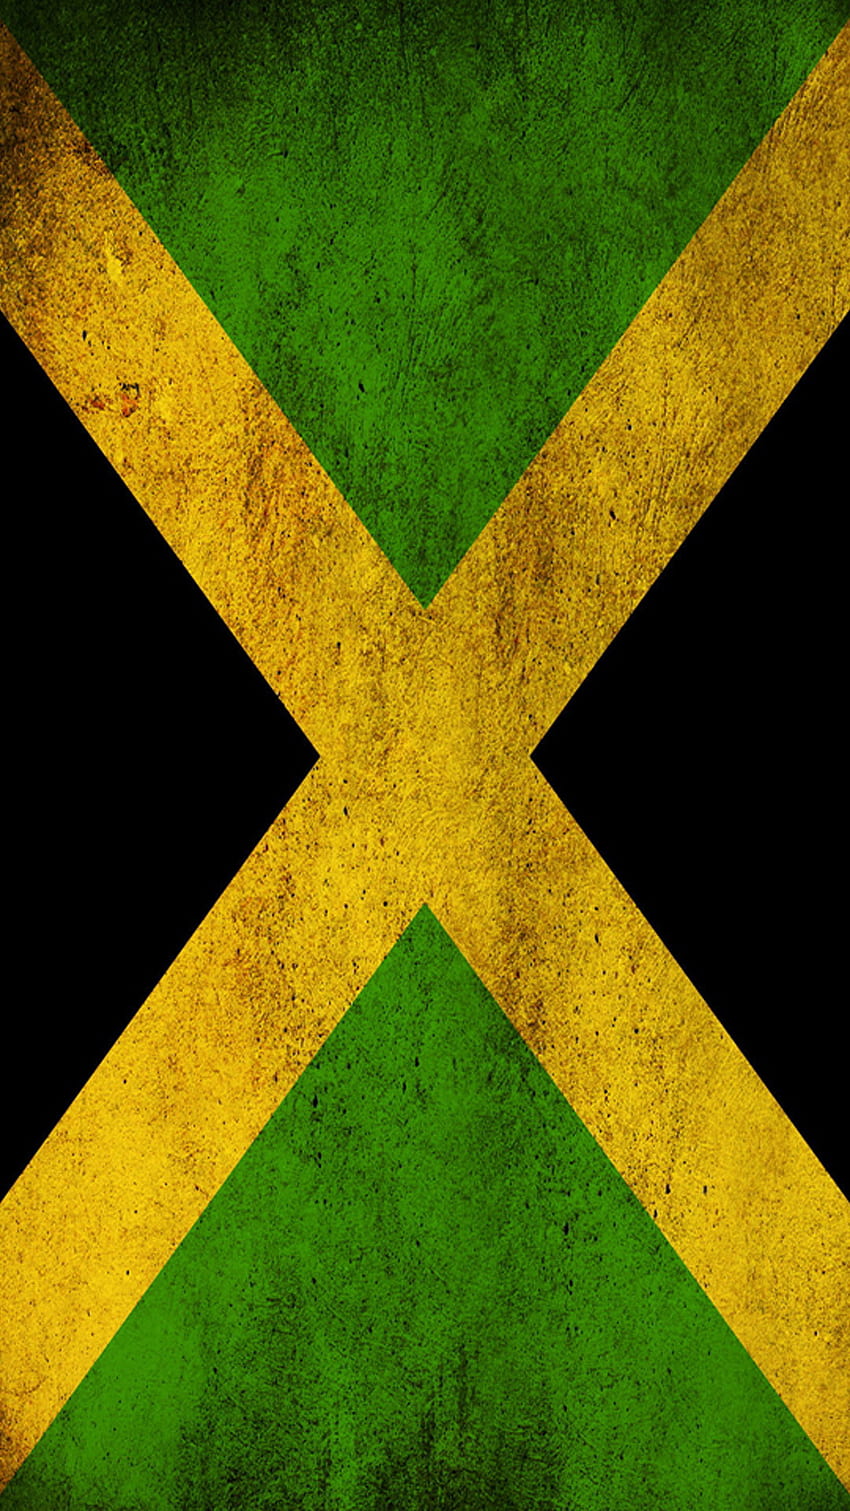 Jamaikanische Flagge - Hochwertige htc one und abstrakte Hintergründe, entworfen von den besten und kreativsten Künstlern der Welt. HD-Handy-Hintergrundbild